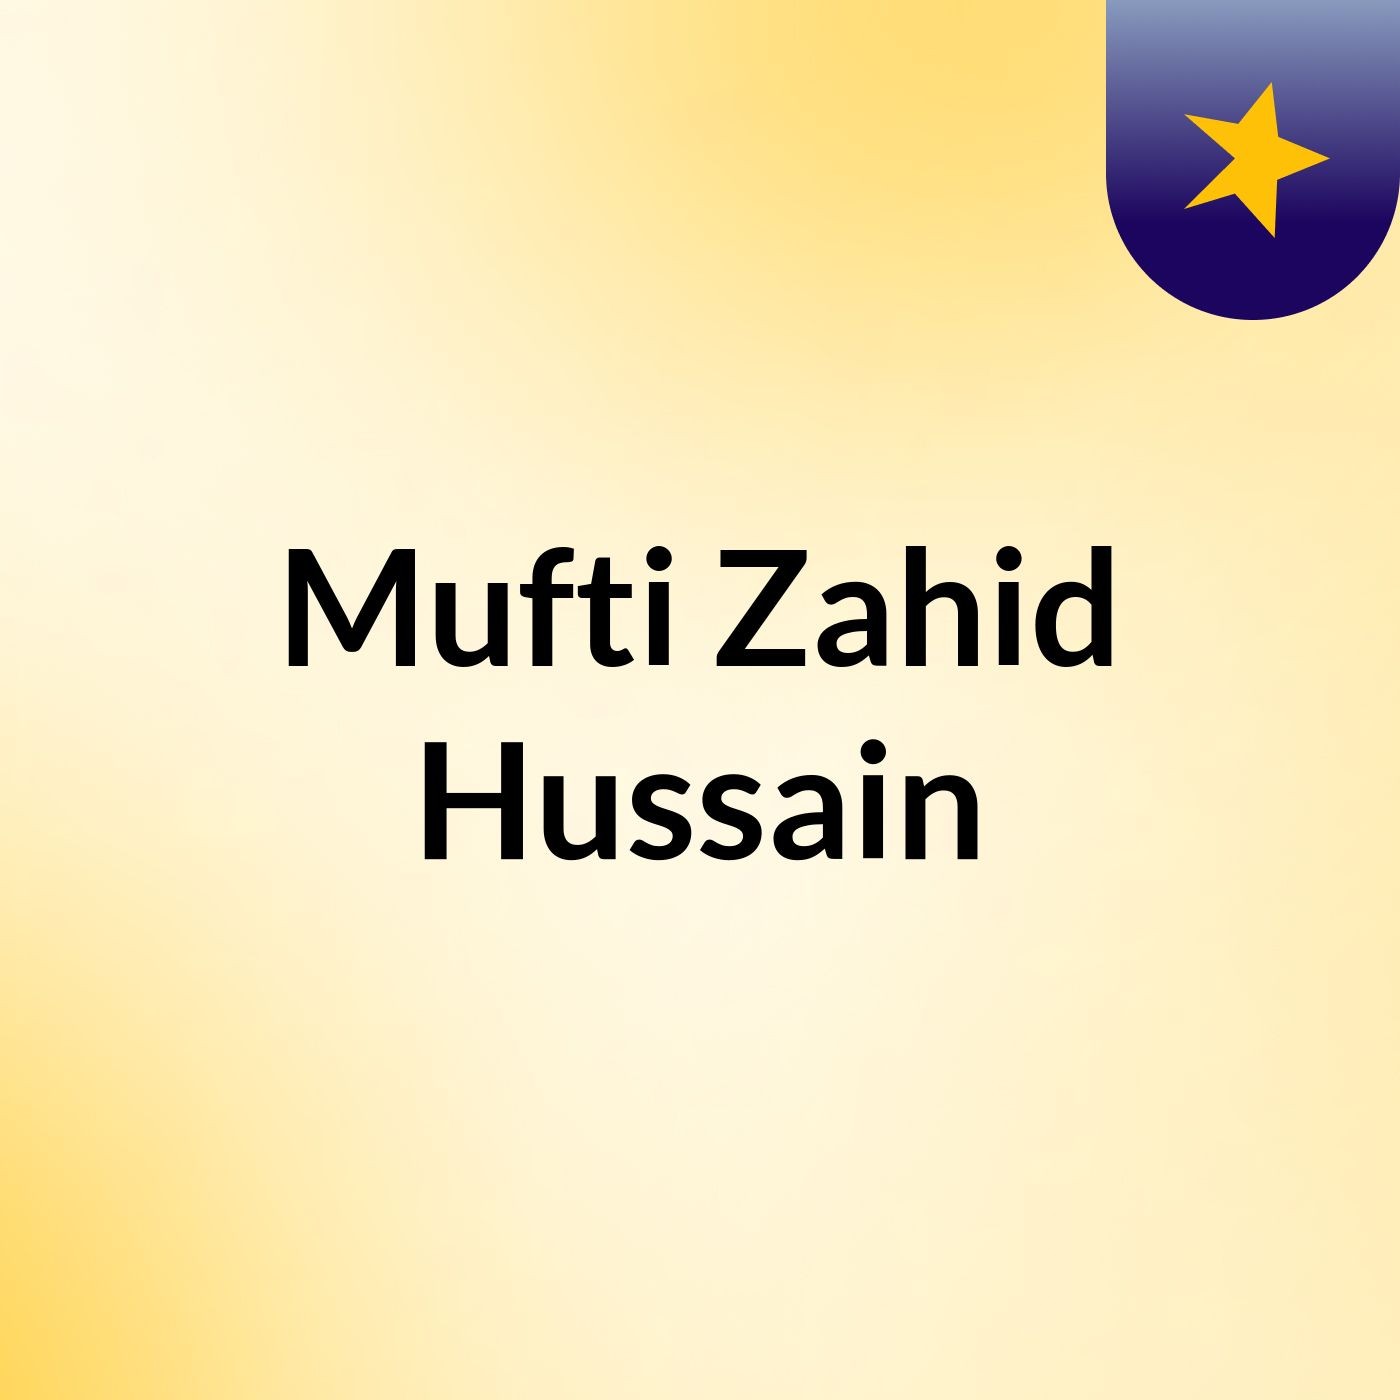 Mufti Zahid Hussain